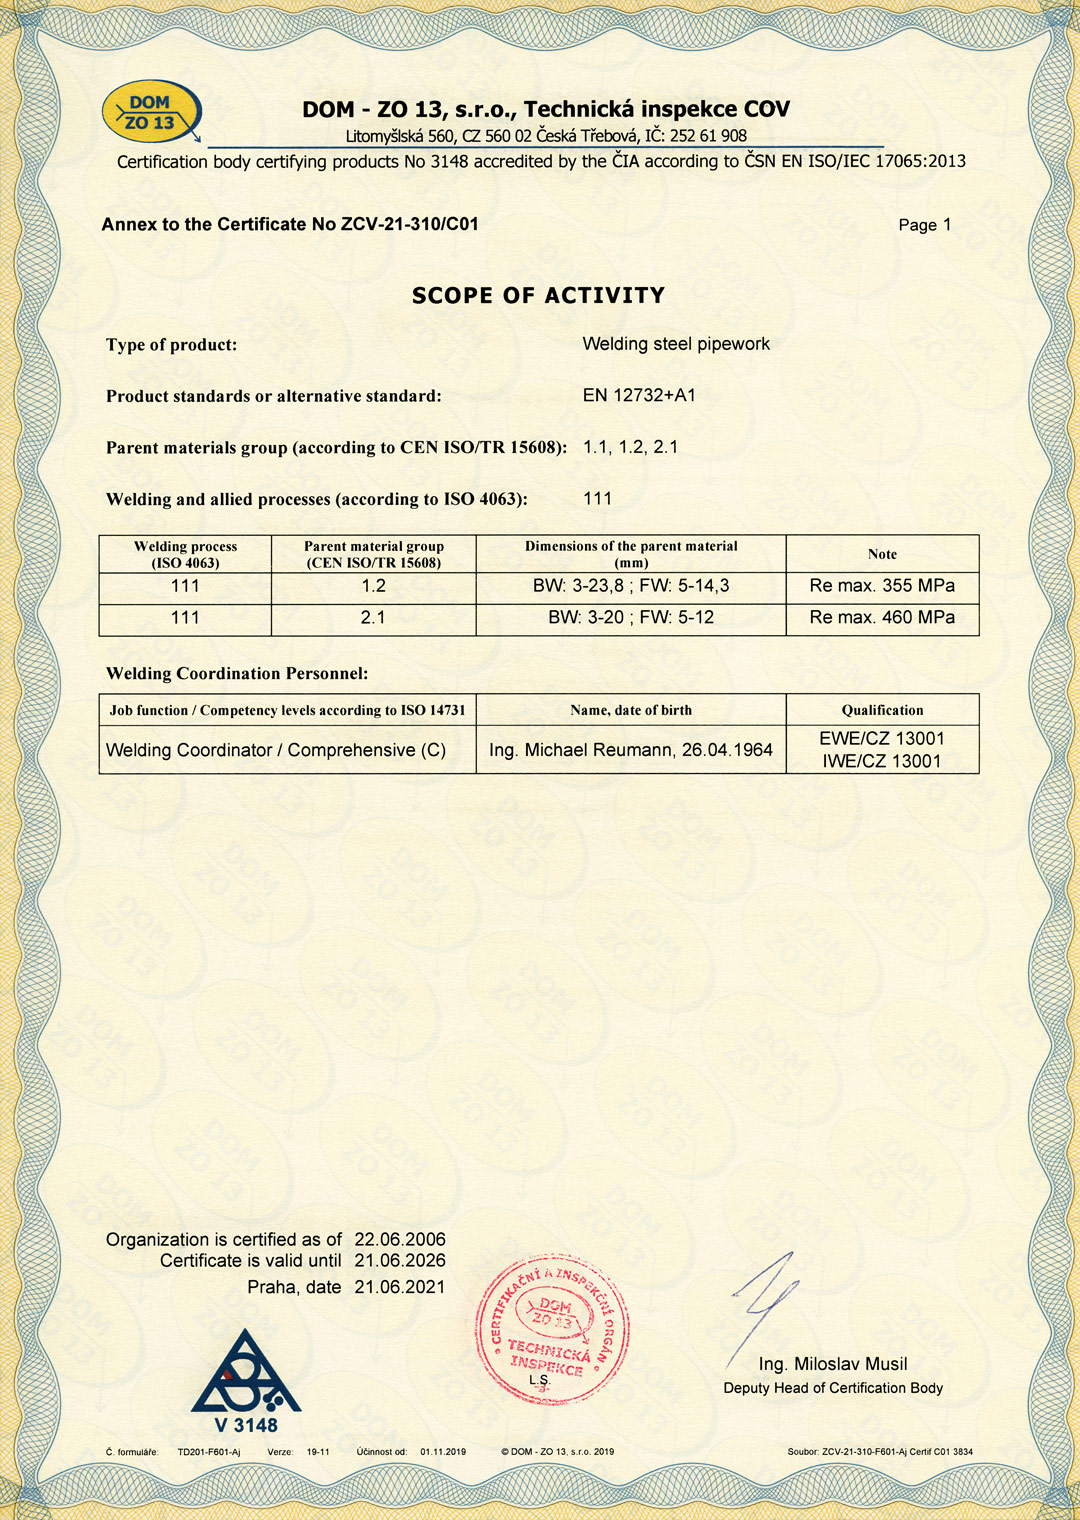 Annex to EN ISO 3834-2:2005 Welding process certificate No. ZCV-21-310/C01